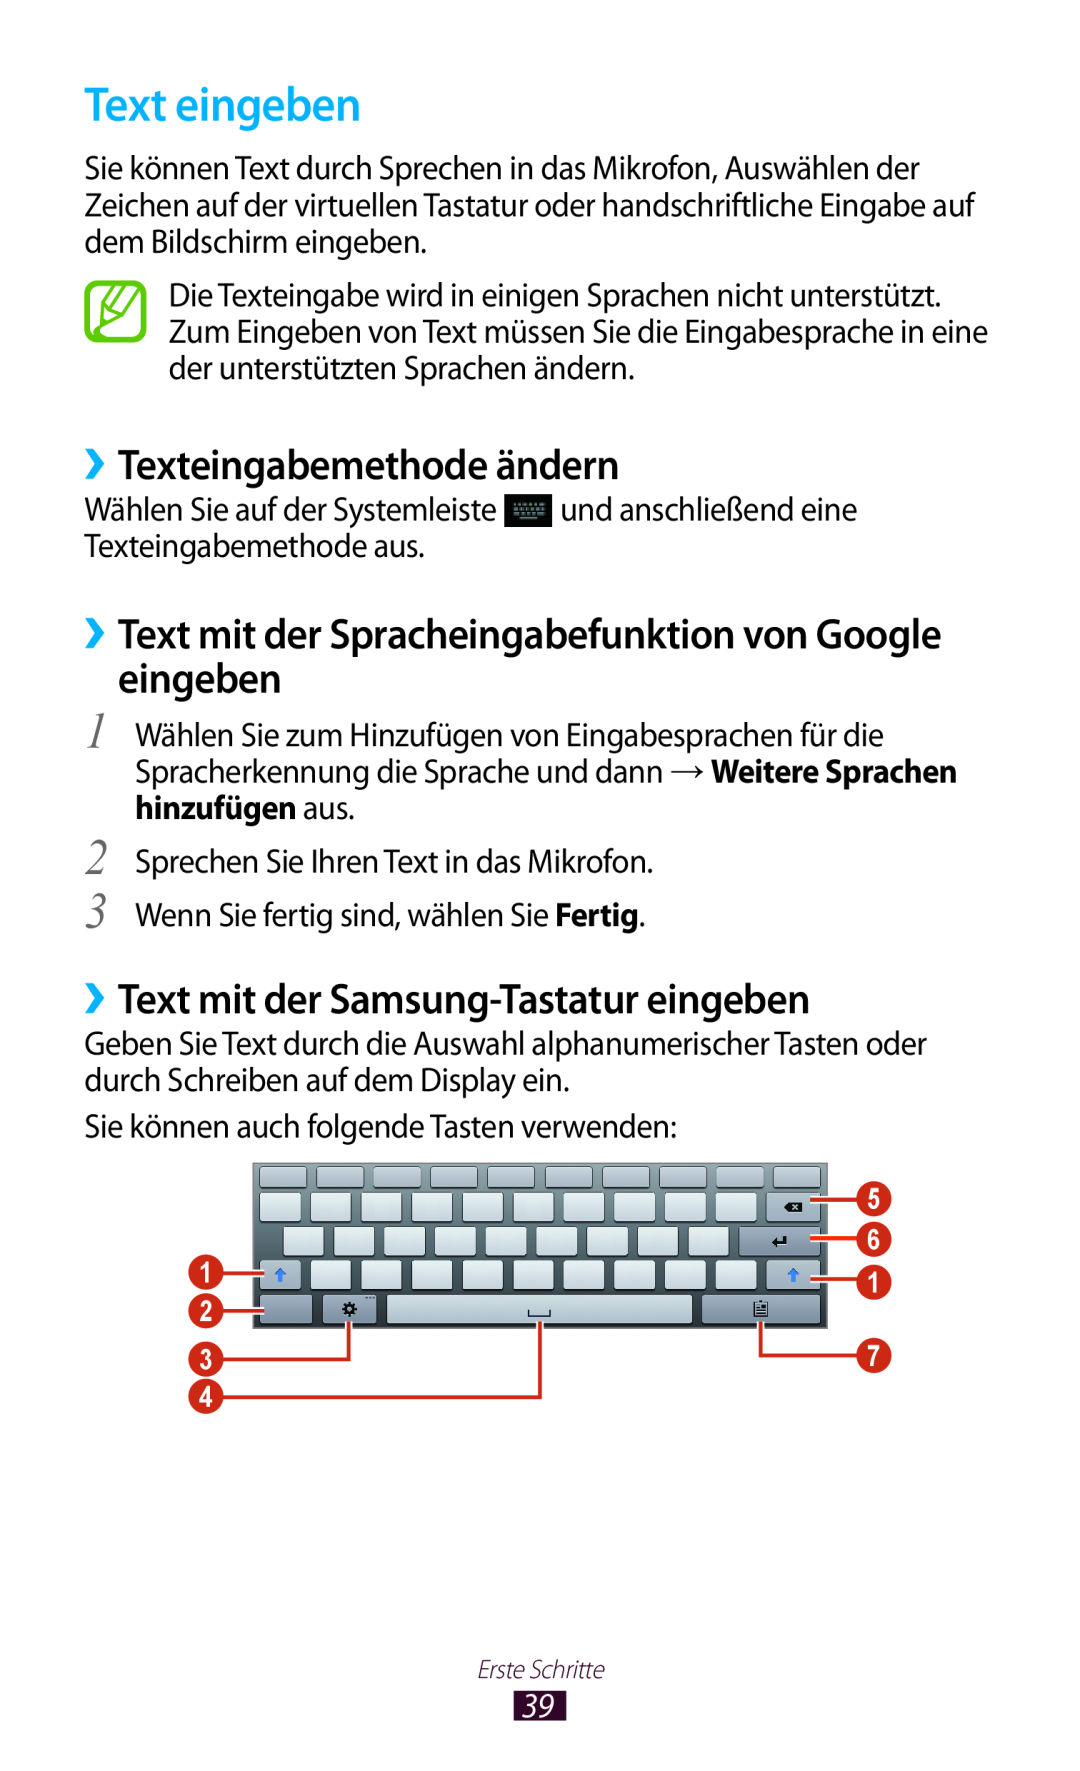 Samsung GT-P5100ZWAXEO manual Text eingeben, ››Texteingabemethode ändern, ››Text mit der Samsung-Tastatur eingeben 